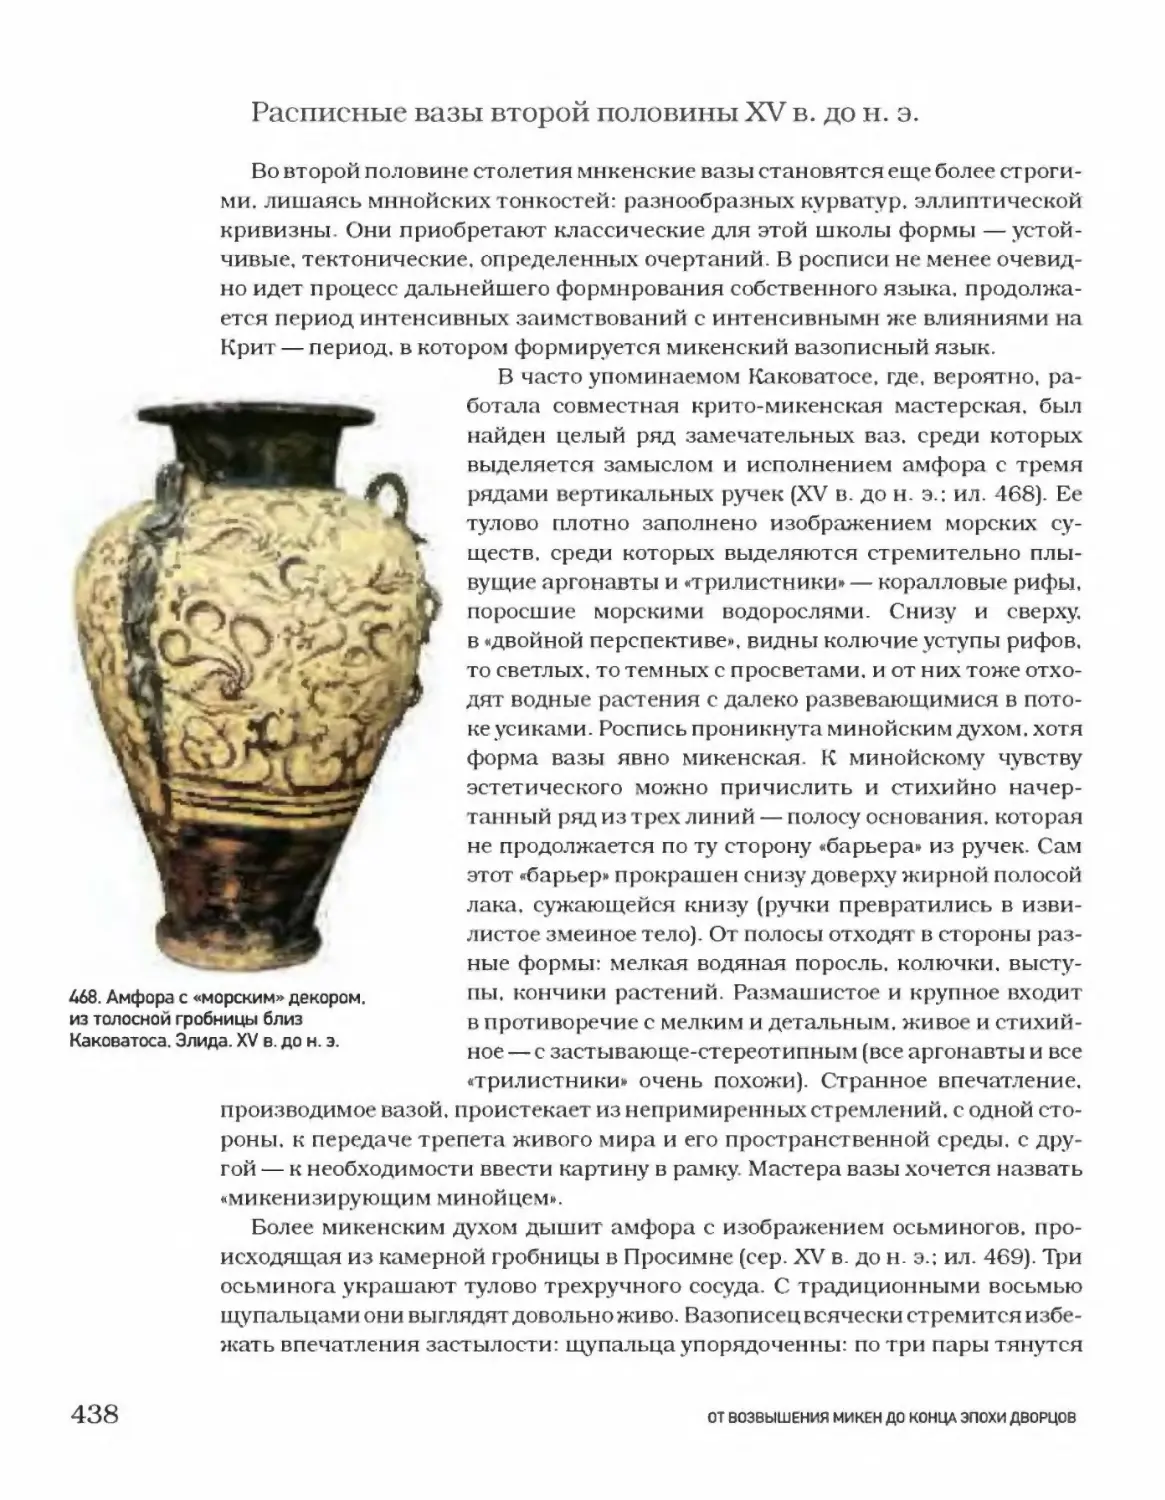 Расписные вазы второй половины XV в. до н. э.